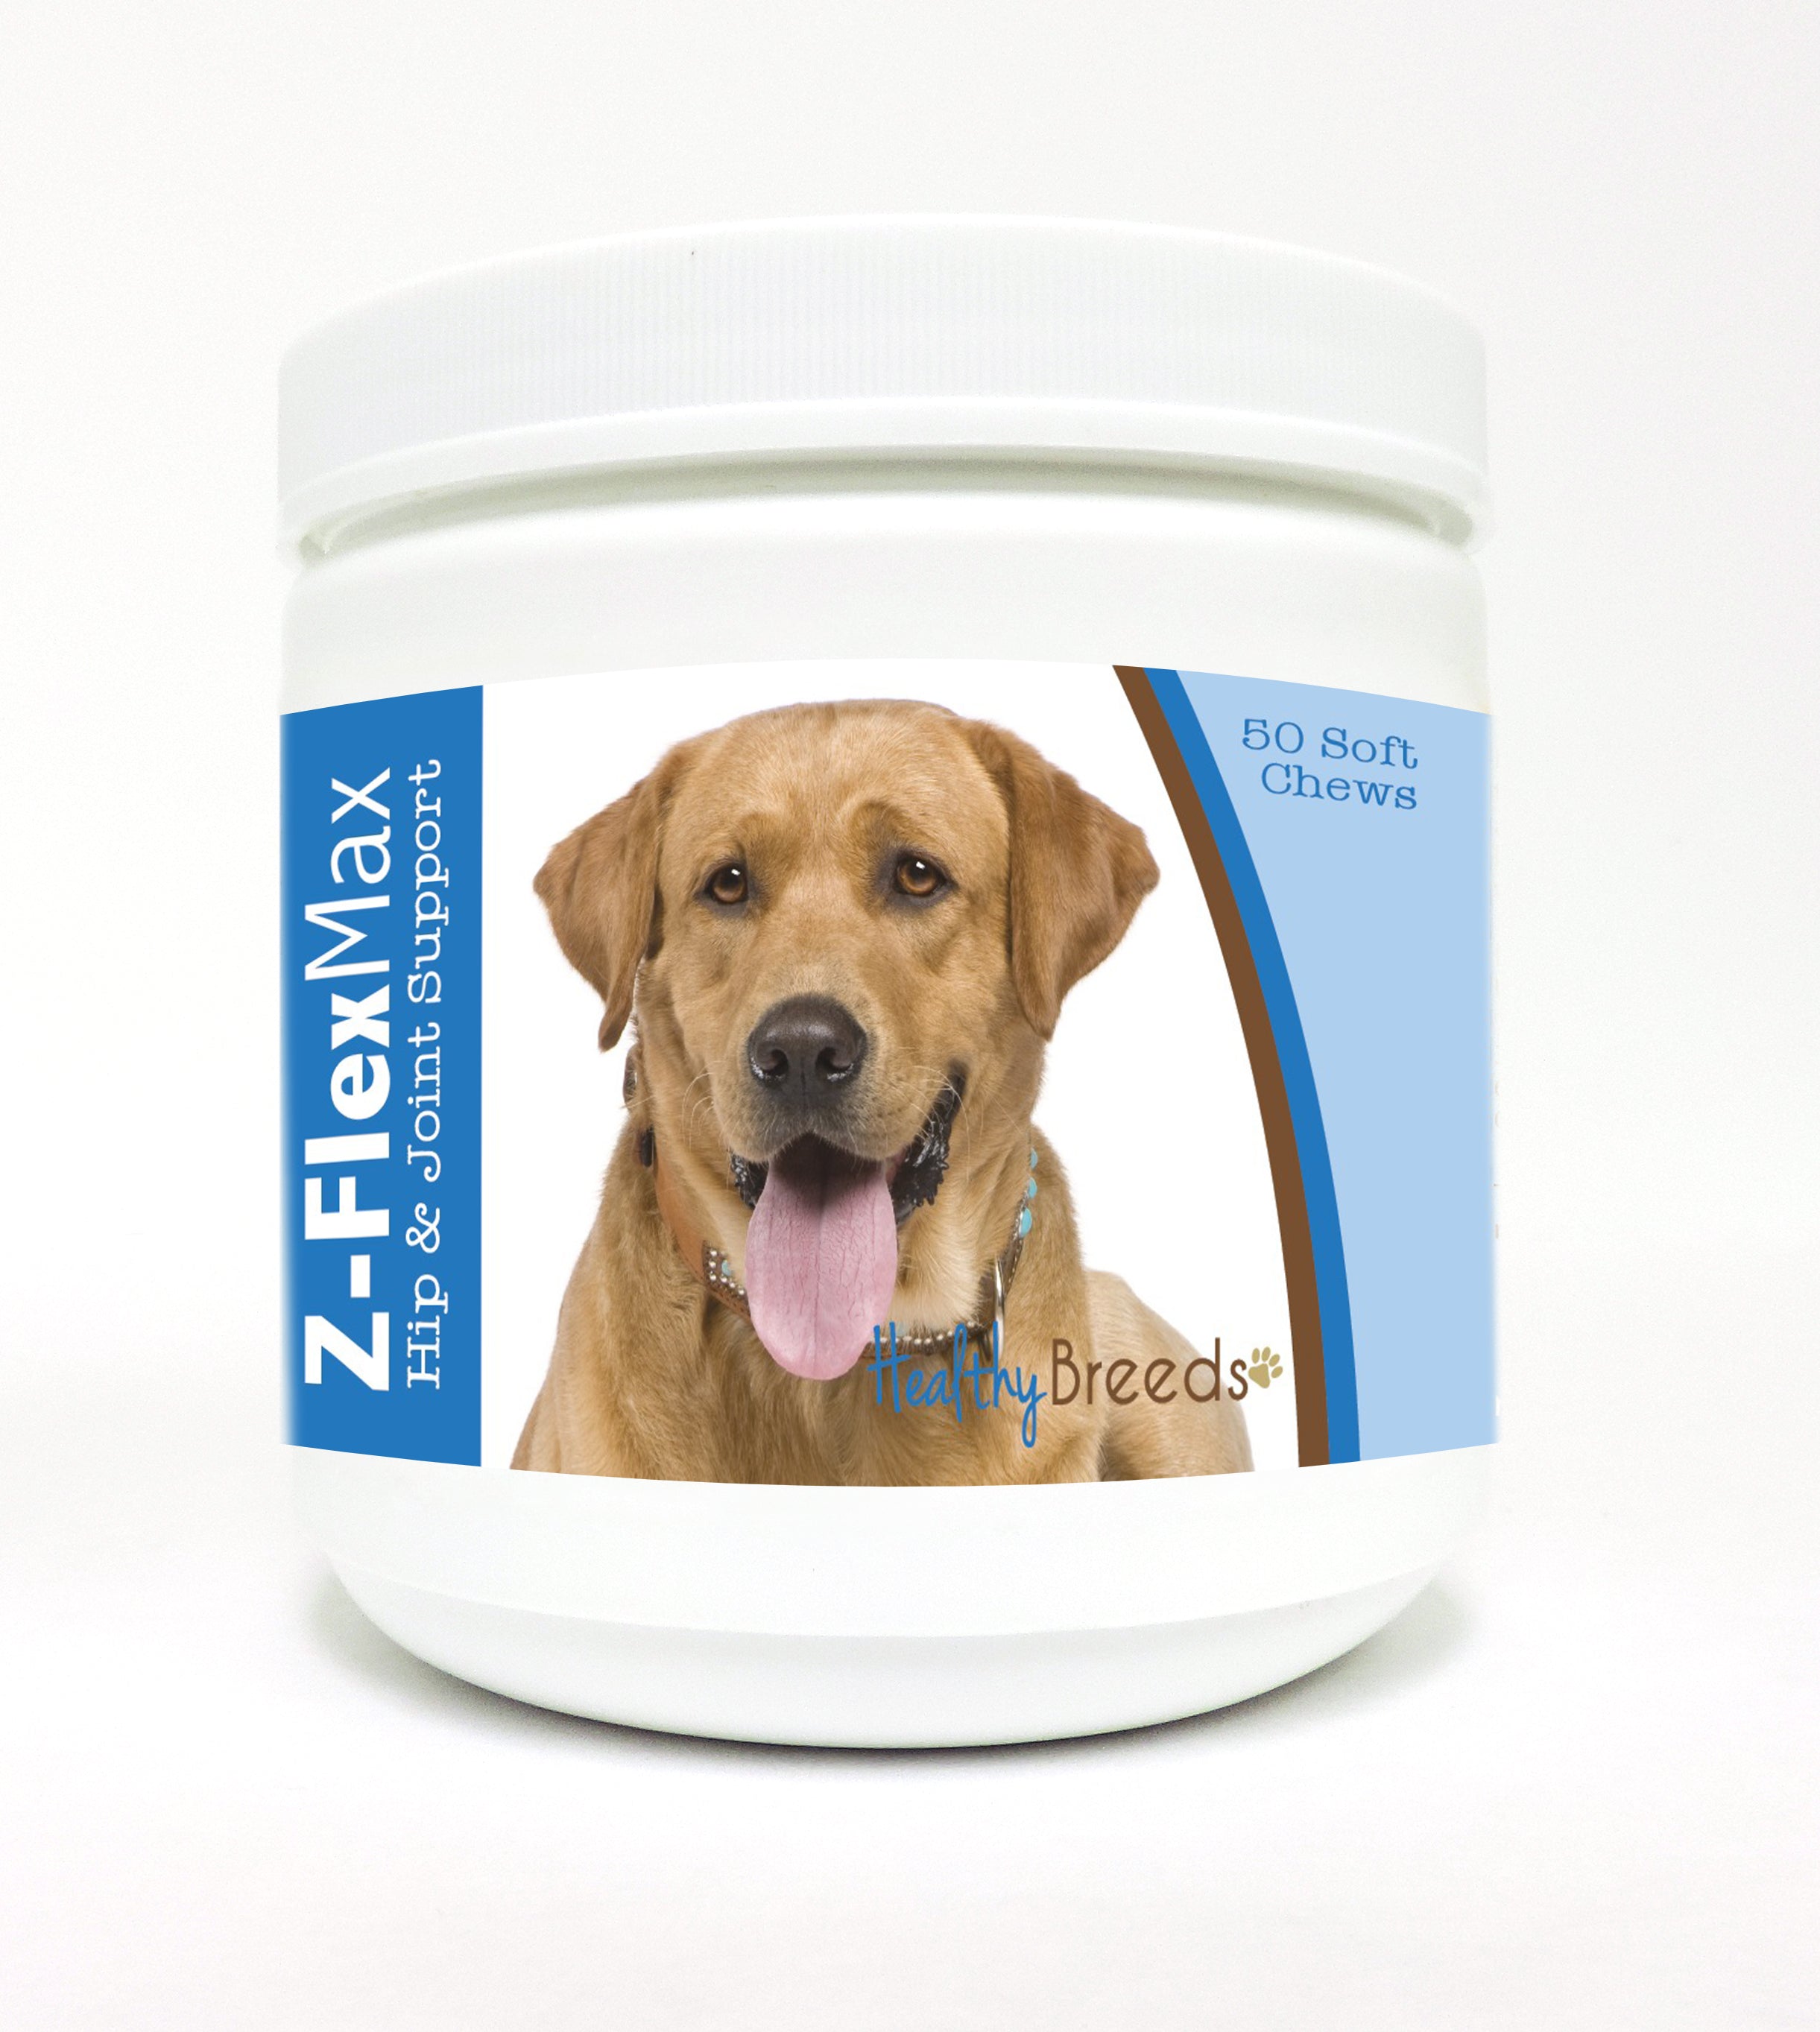 Labrador Retriever Z-Flex Max Hip and Joint Soft Chews 50 Count